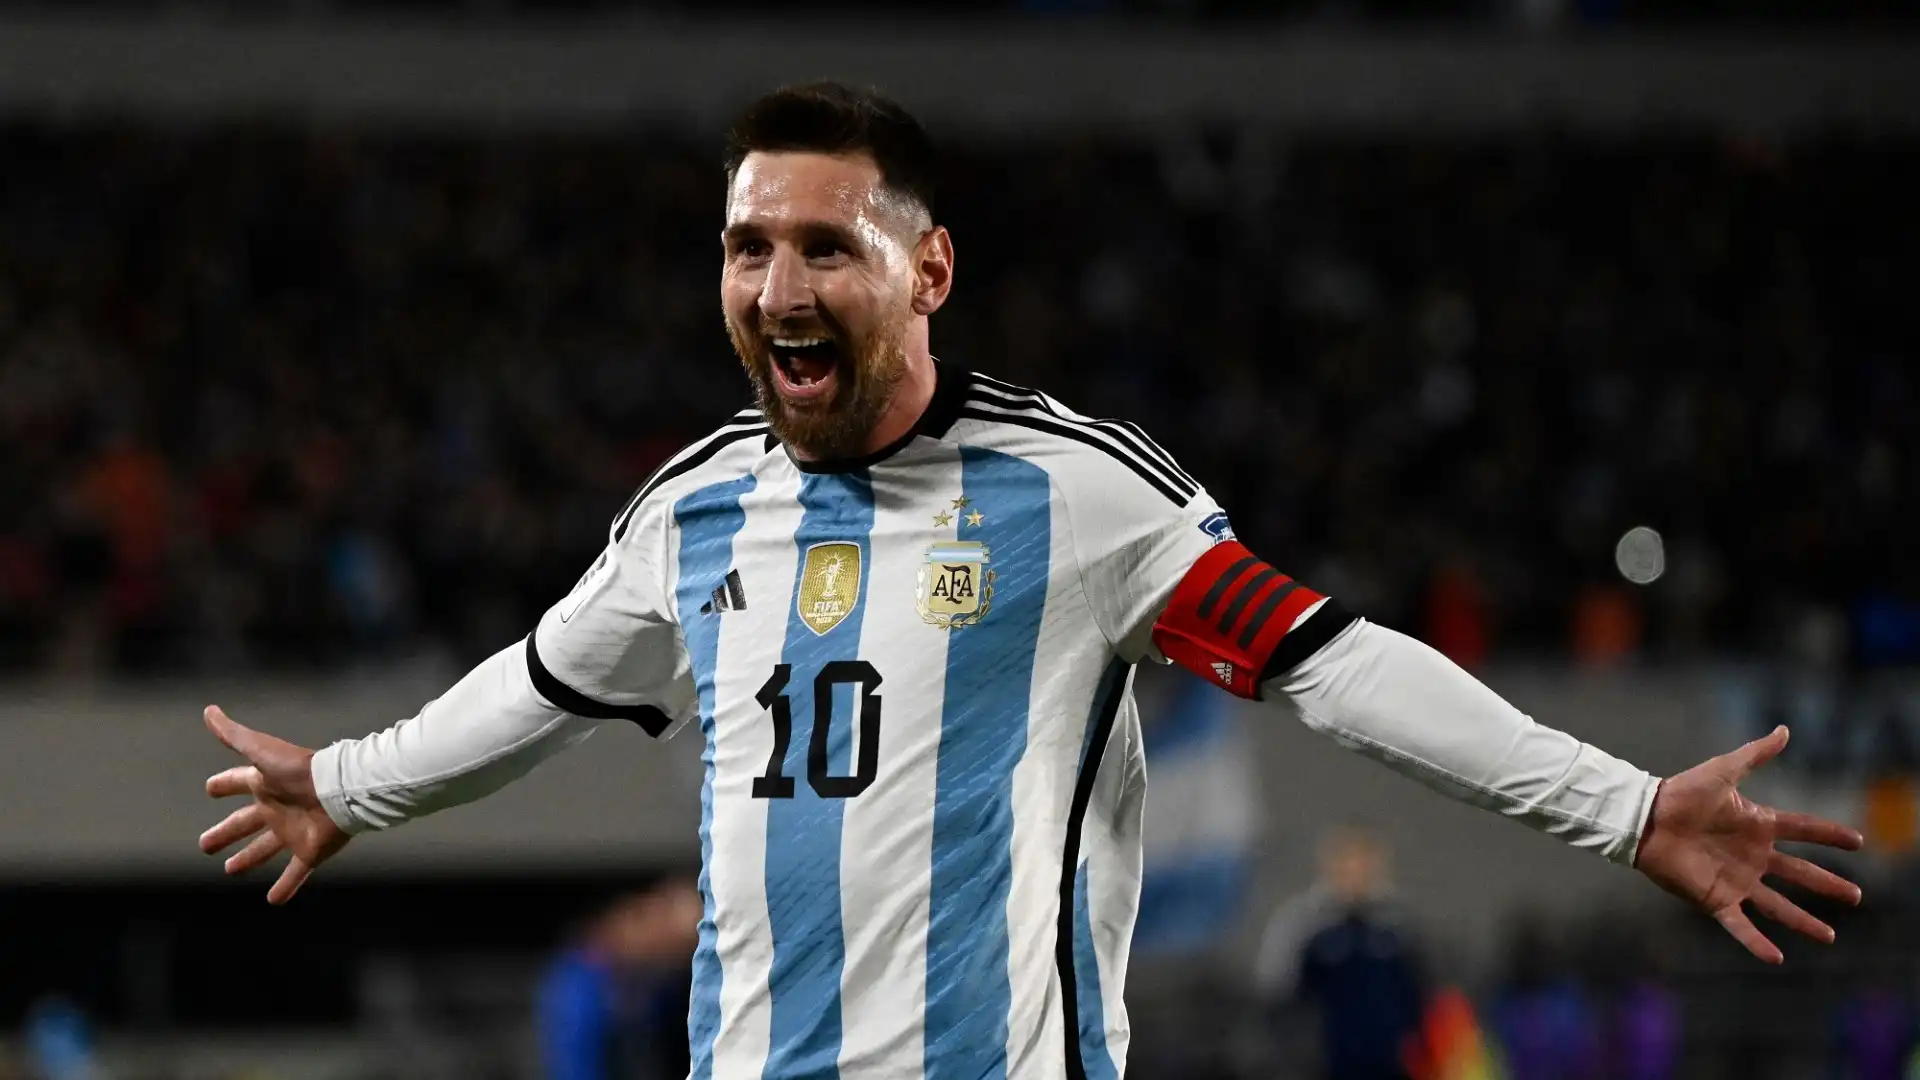 Dopo la partita Messi ha parlato da leader: "Non possiamo rilassarci, dobbiamo dare sempre il massimo. L'obiettivo è qualificarsi nuovamente al Mondiale"